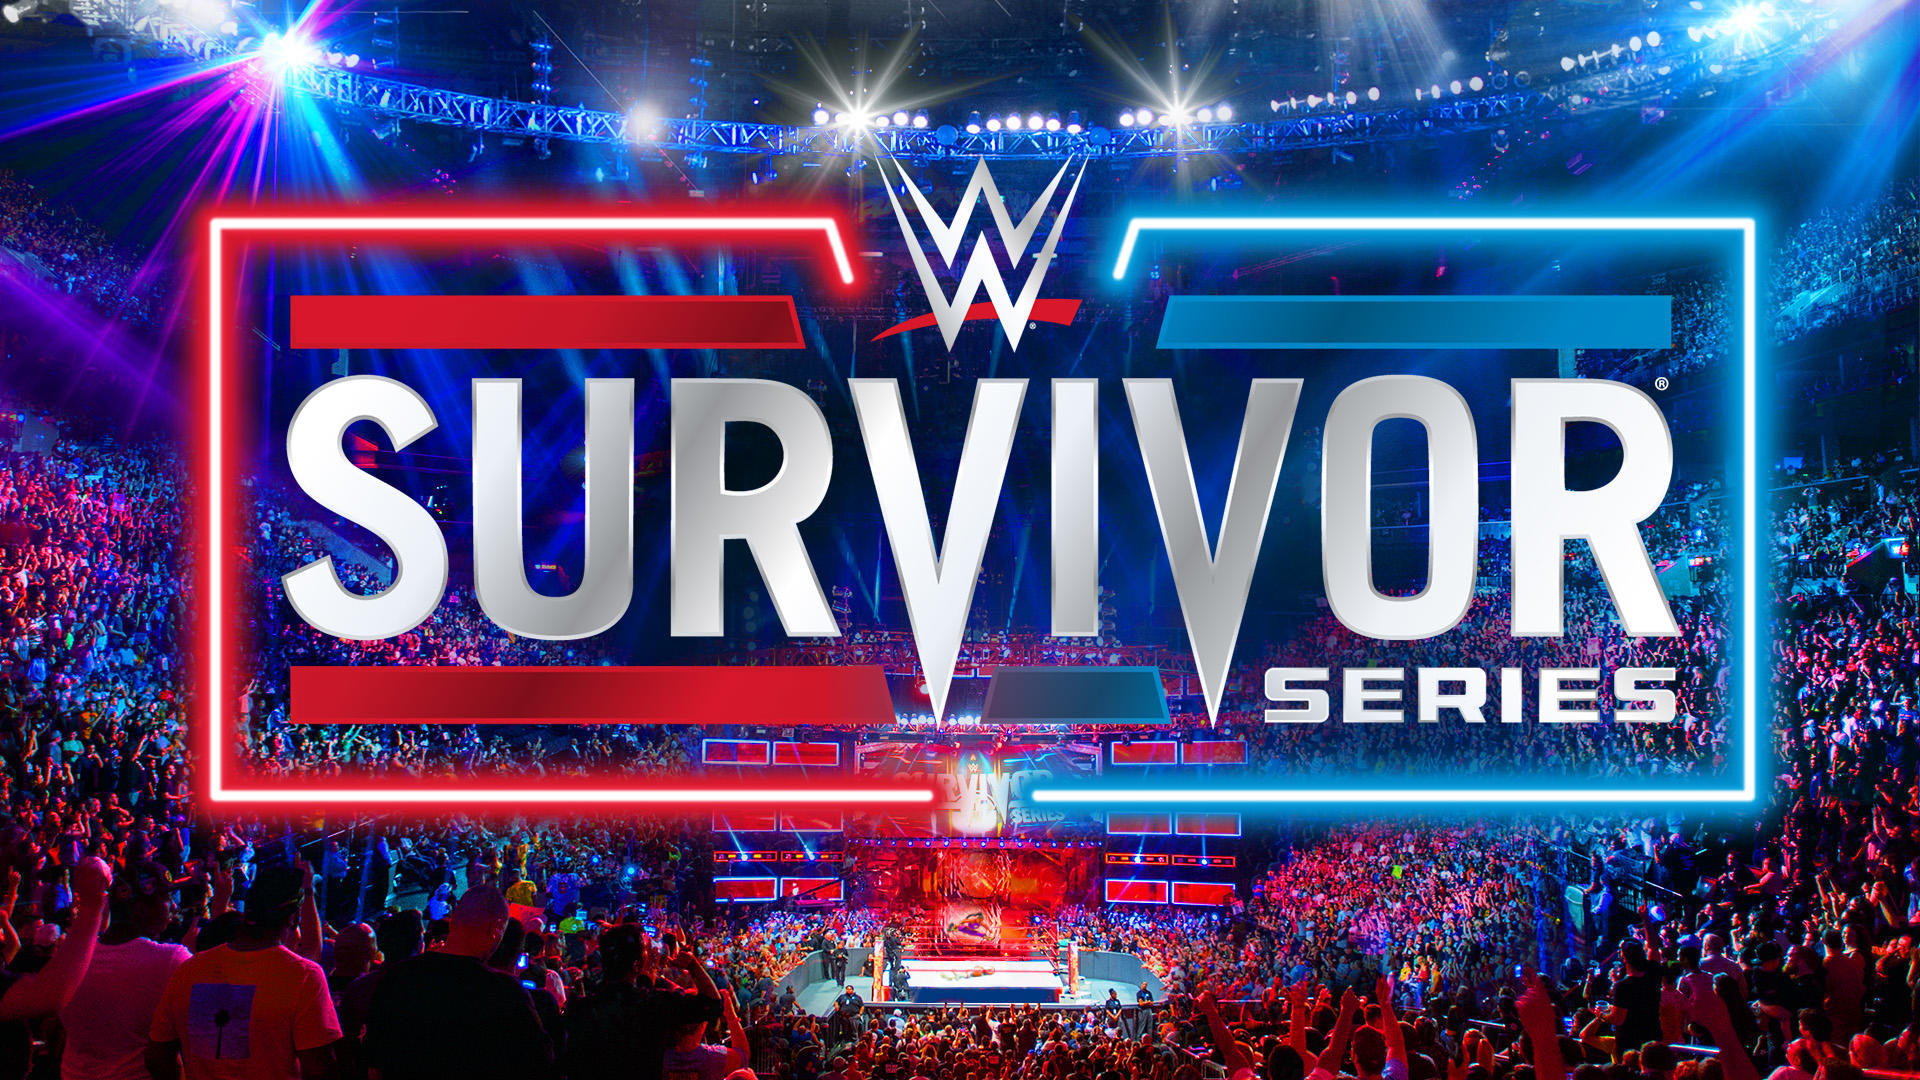 Update On Ticket Sales For WWE Survivor Series